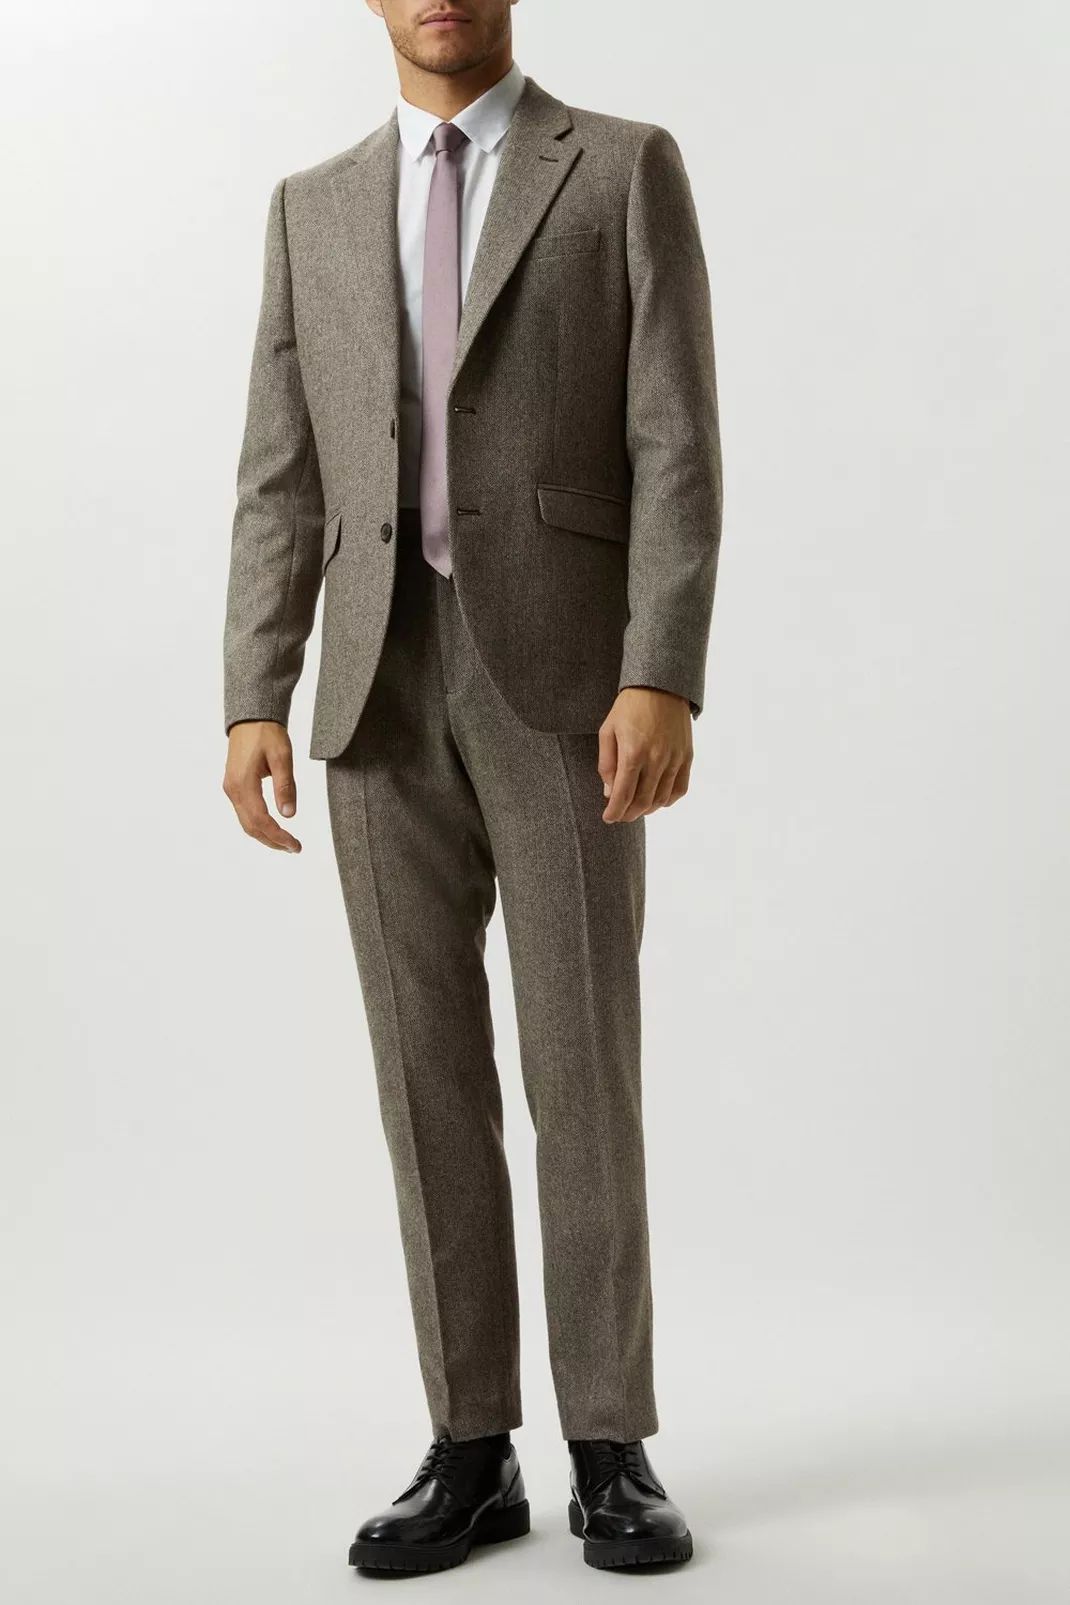 Buy Slim Fit Neutral Basketweave Tweed Suit Jacket for GBP 140.00 | Burton UK | Burton UK